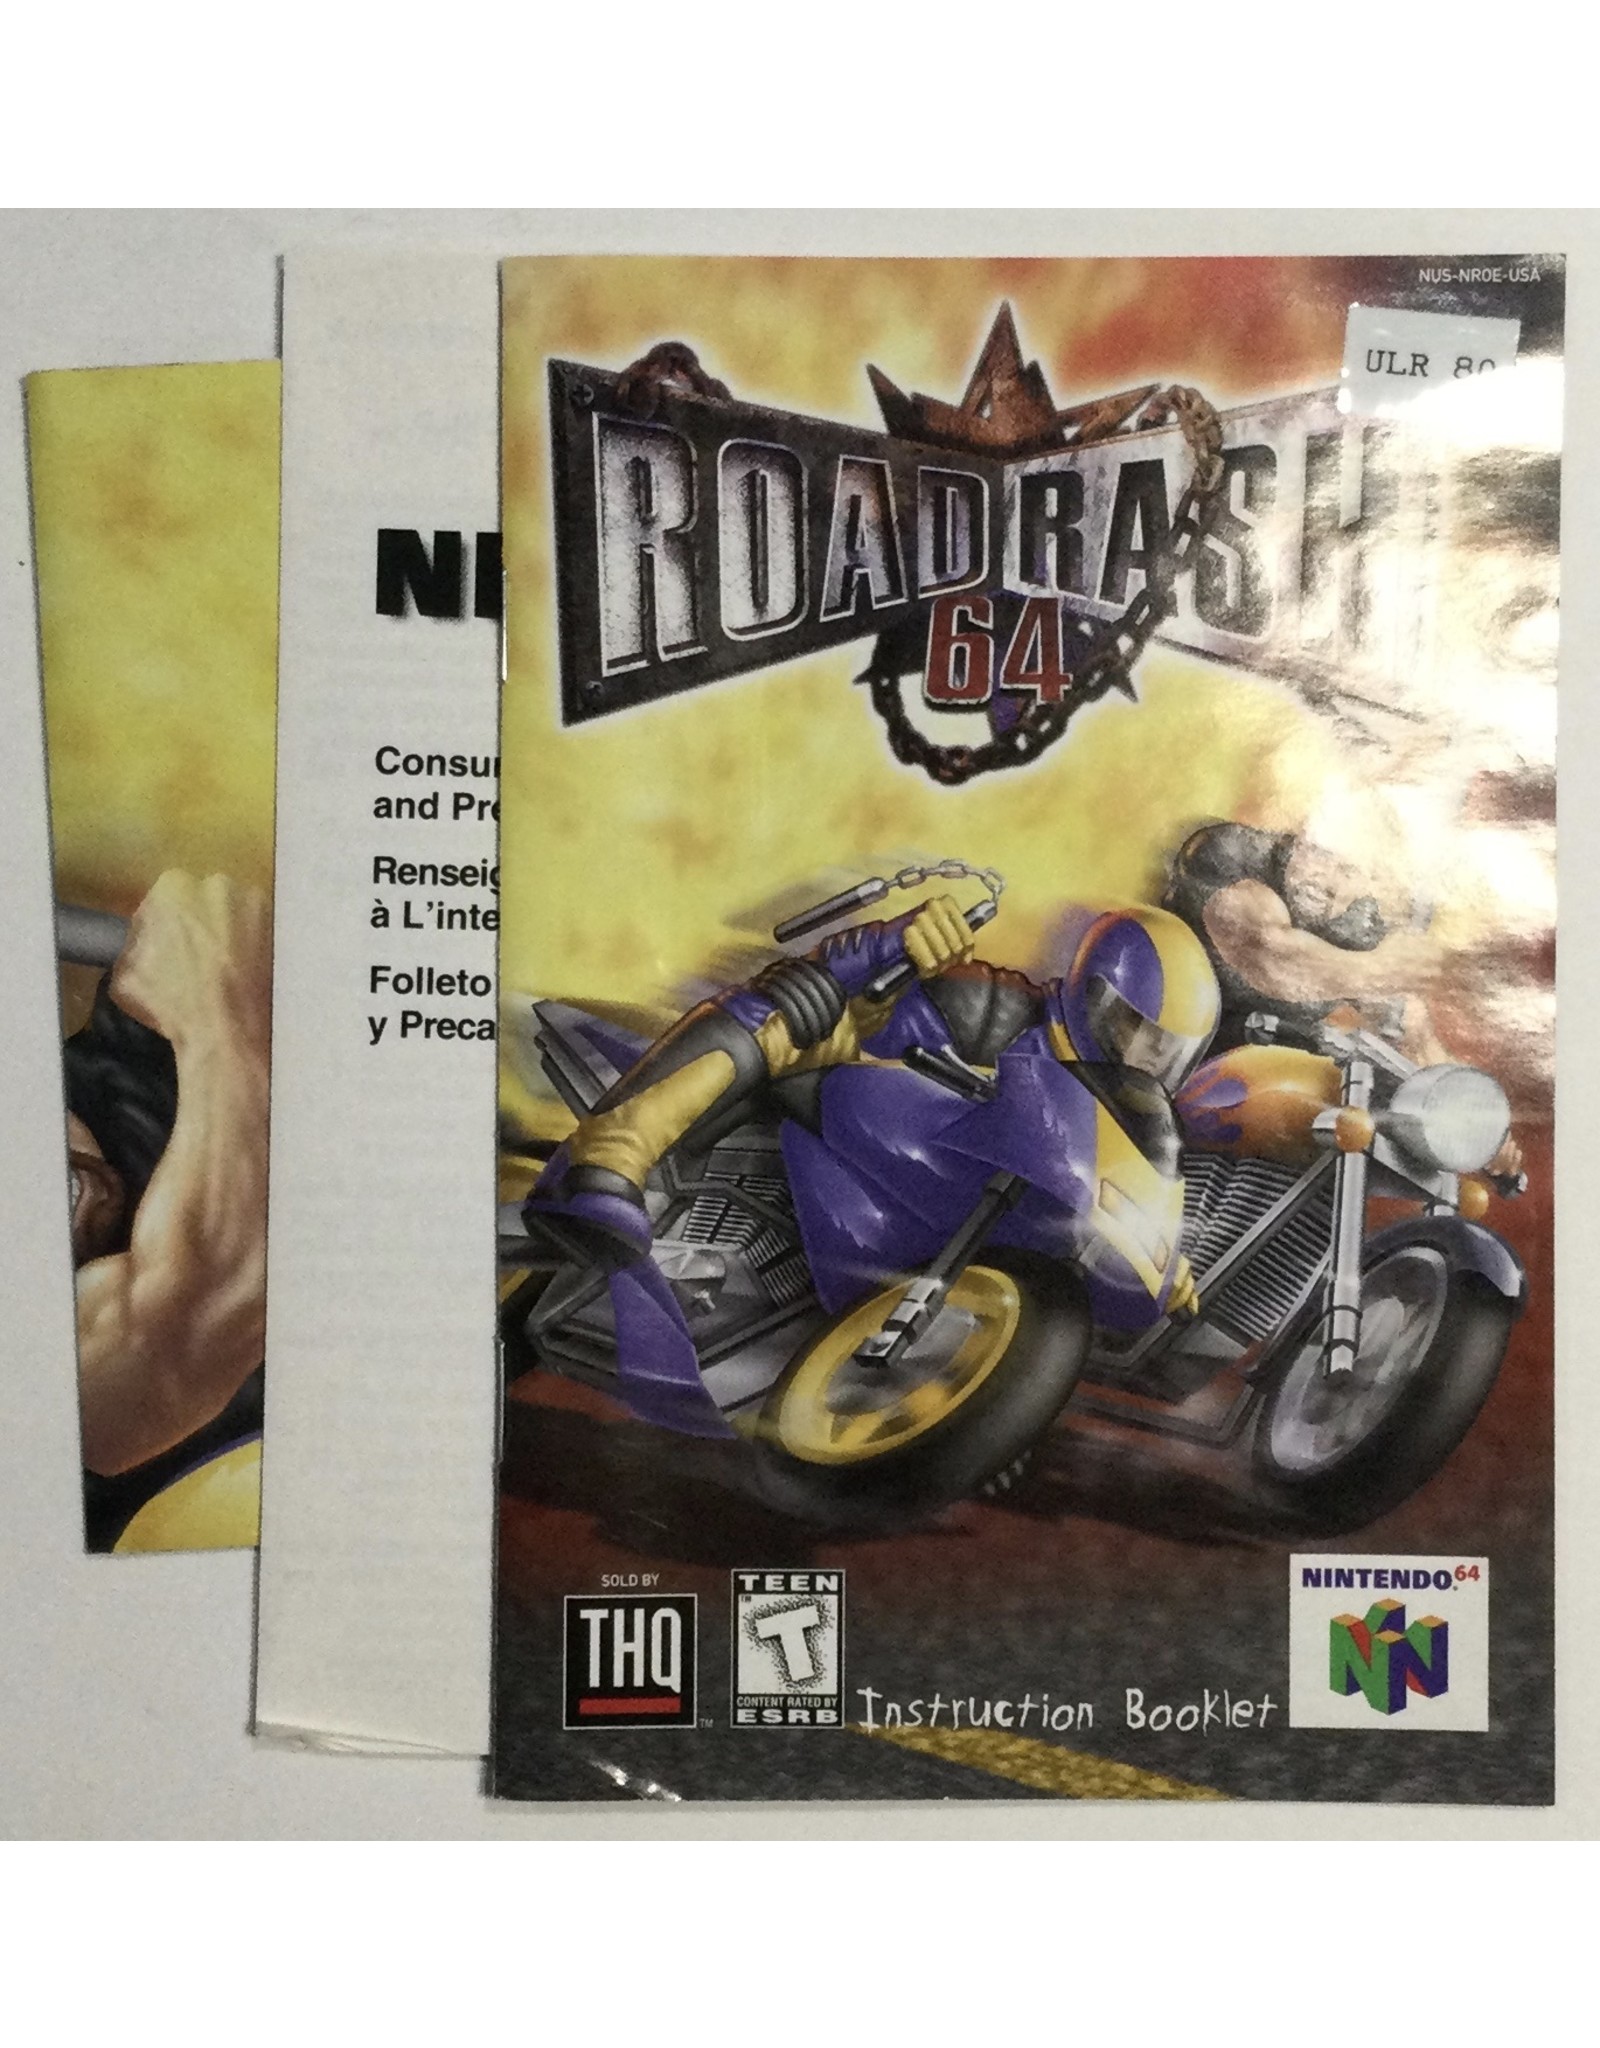 THQ Road Rash 64 for Nintendo 64 (N64) - CIB